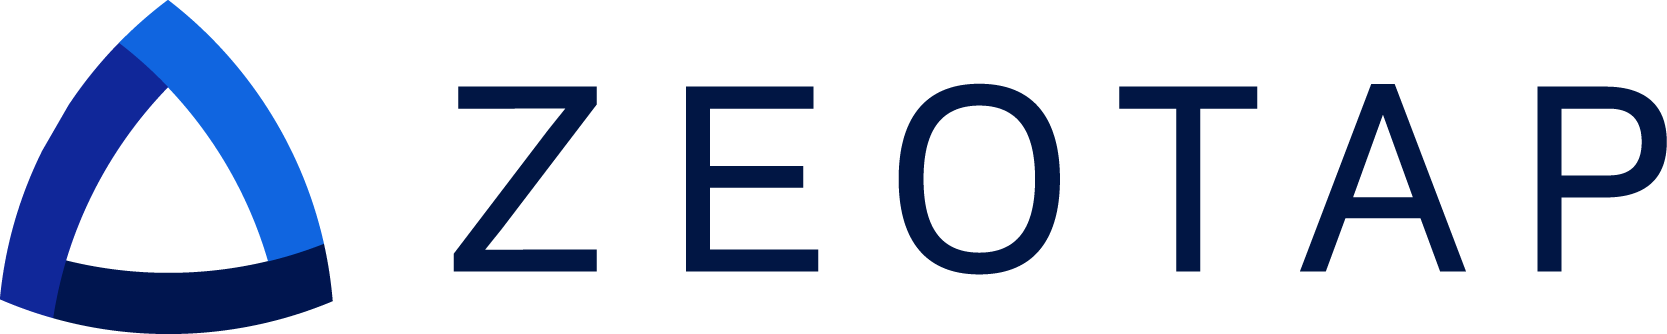 Logo for Zeotap